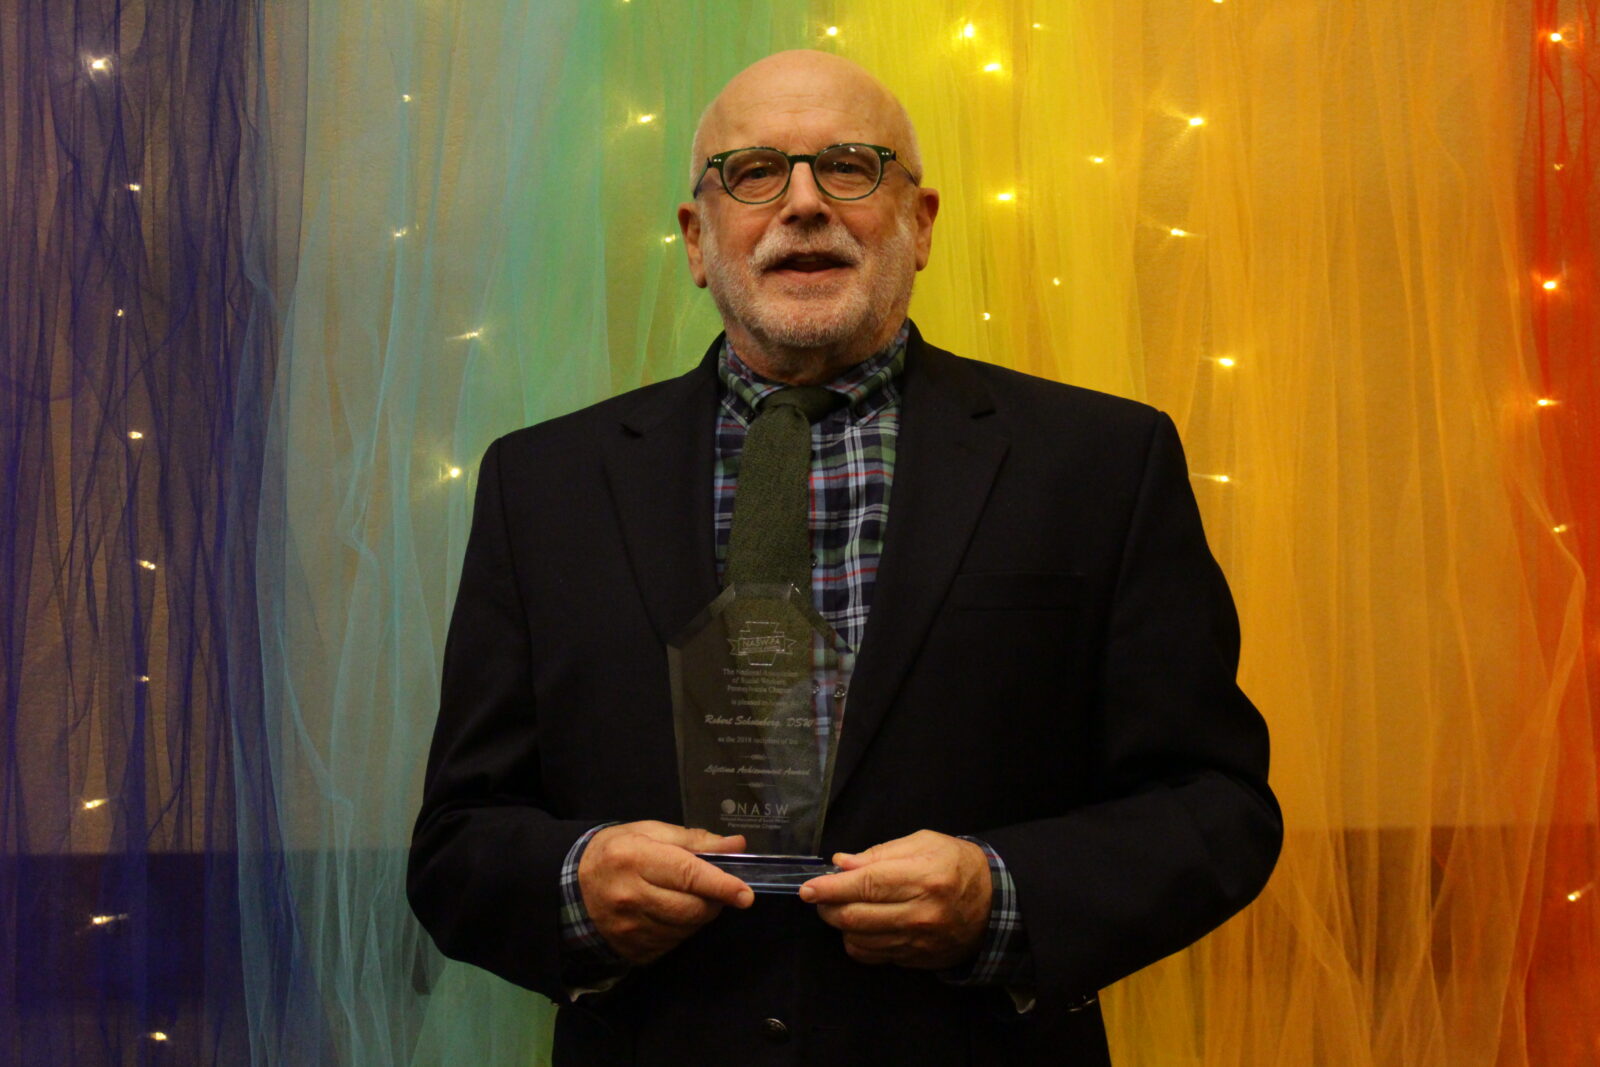 Bob Schoenberg receiving a Lifetime Achievement Award